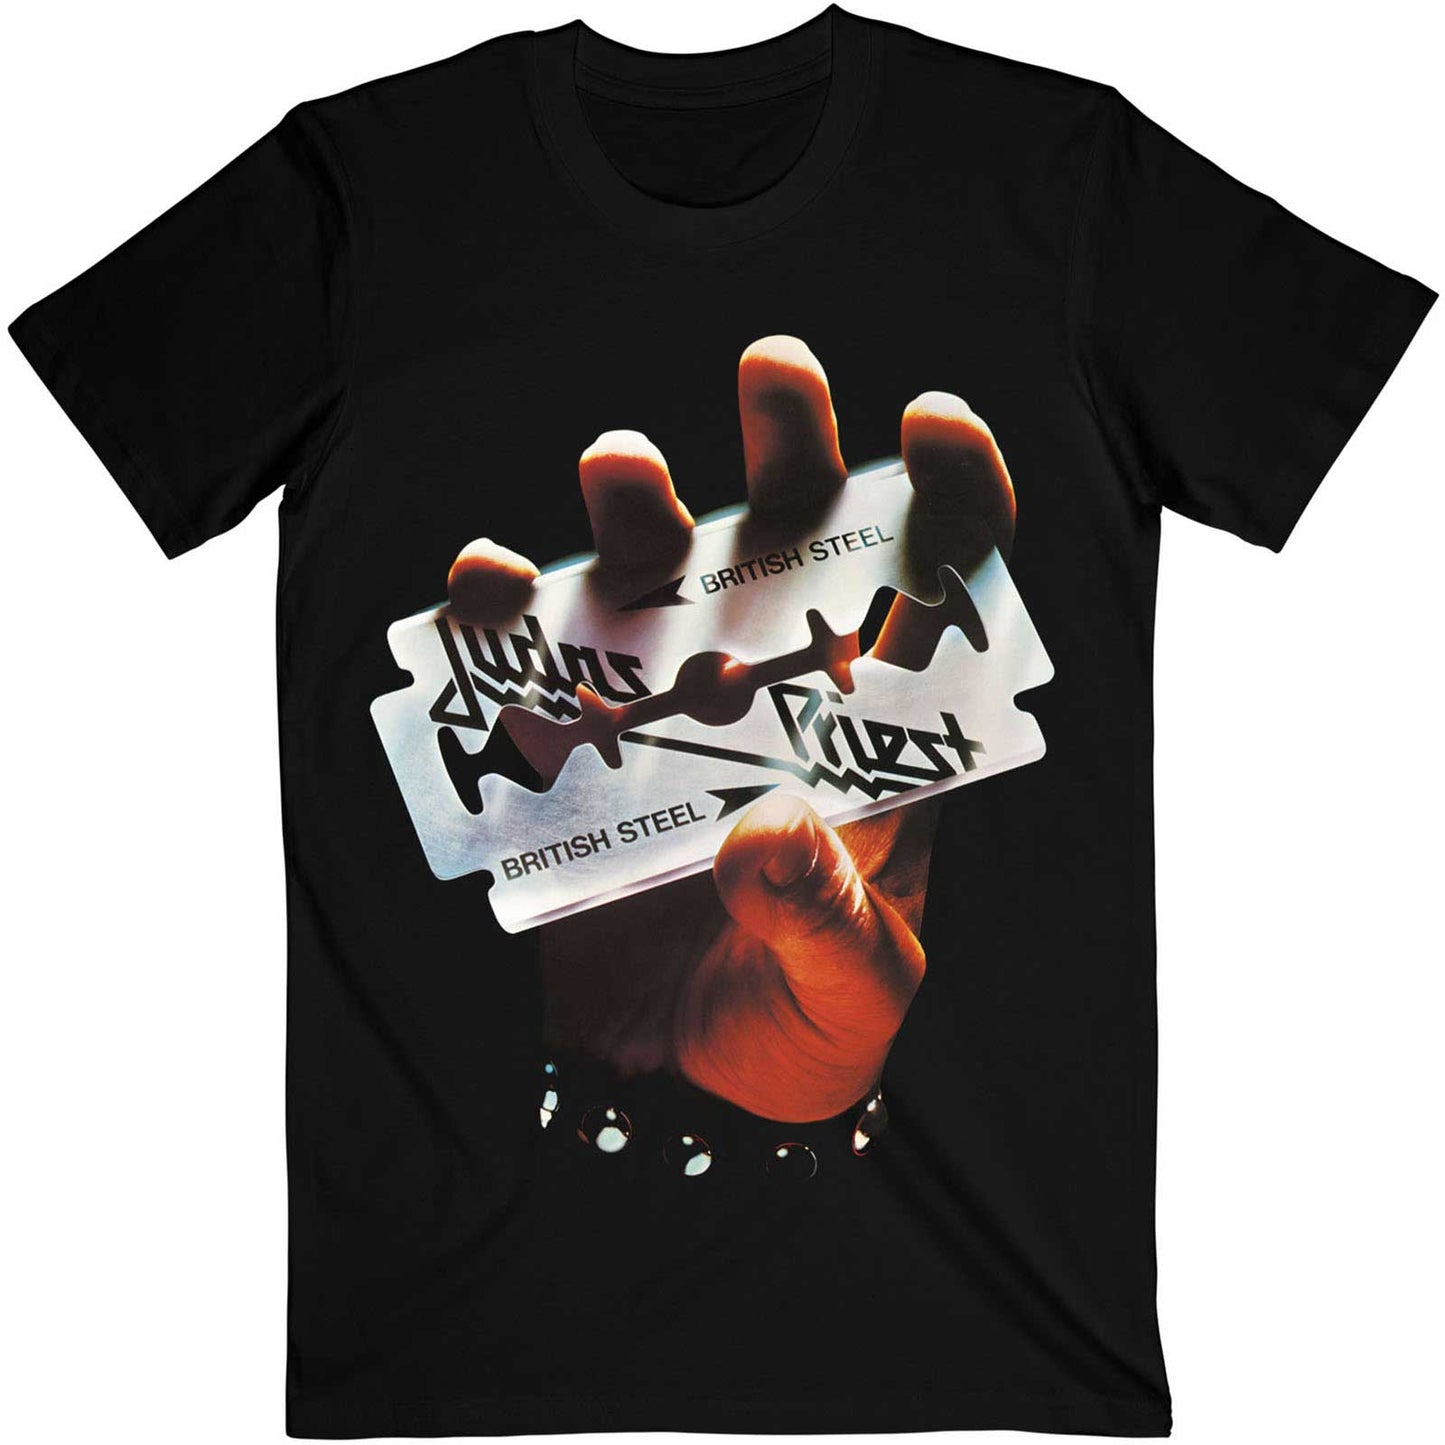 Judas Priest T-Shirt - British Steel Album Cover (Unisex)